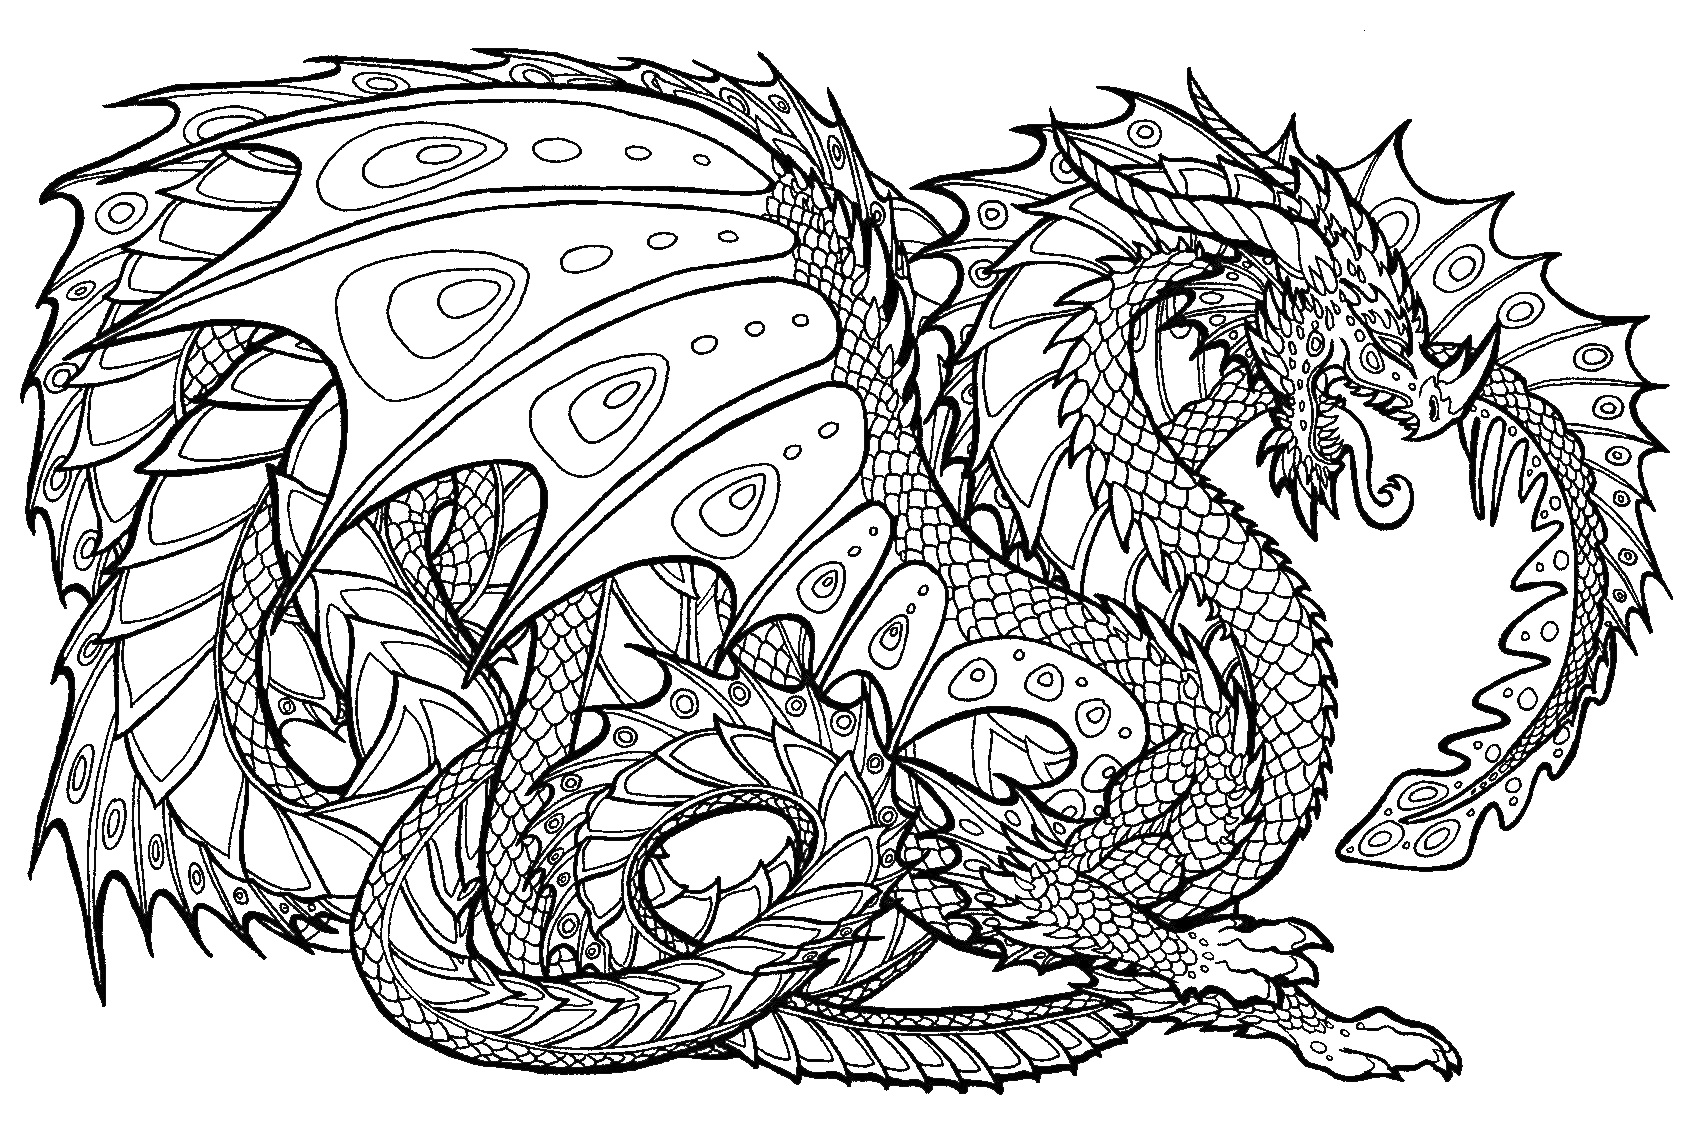 Раскраска Дракон с узорчатыми крыльями и телом